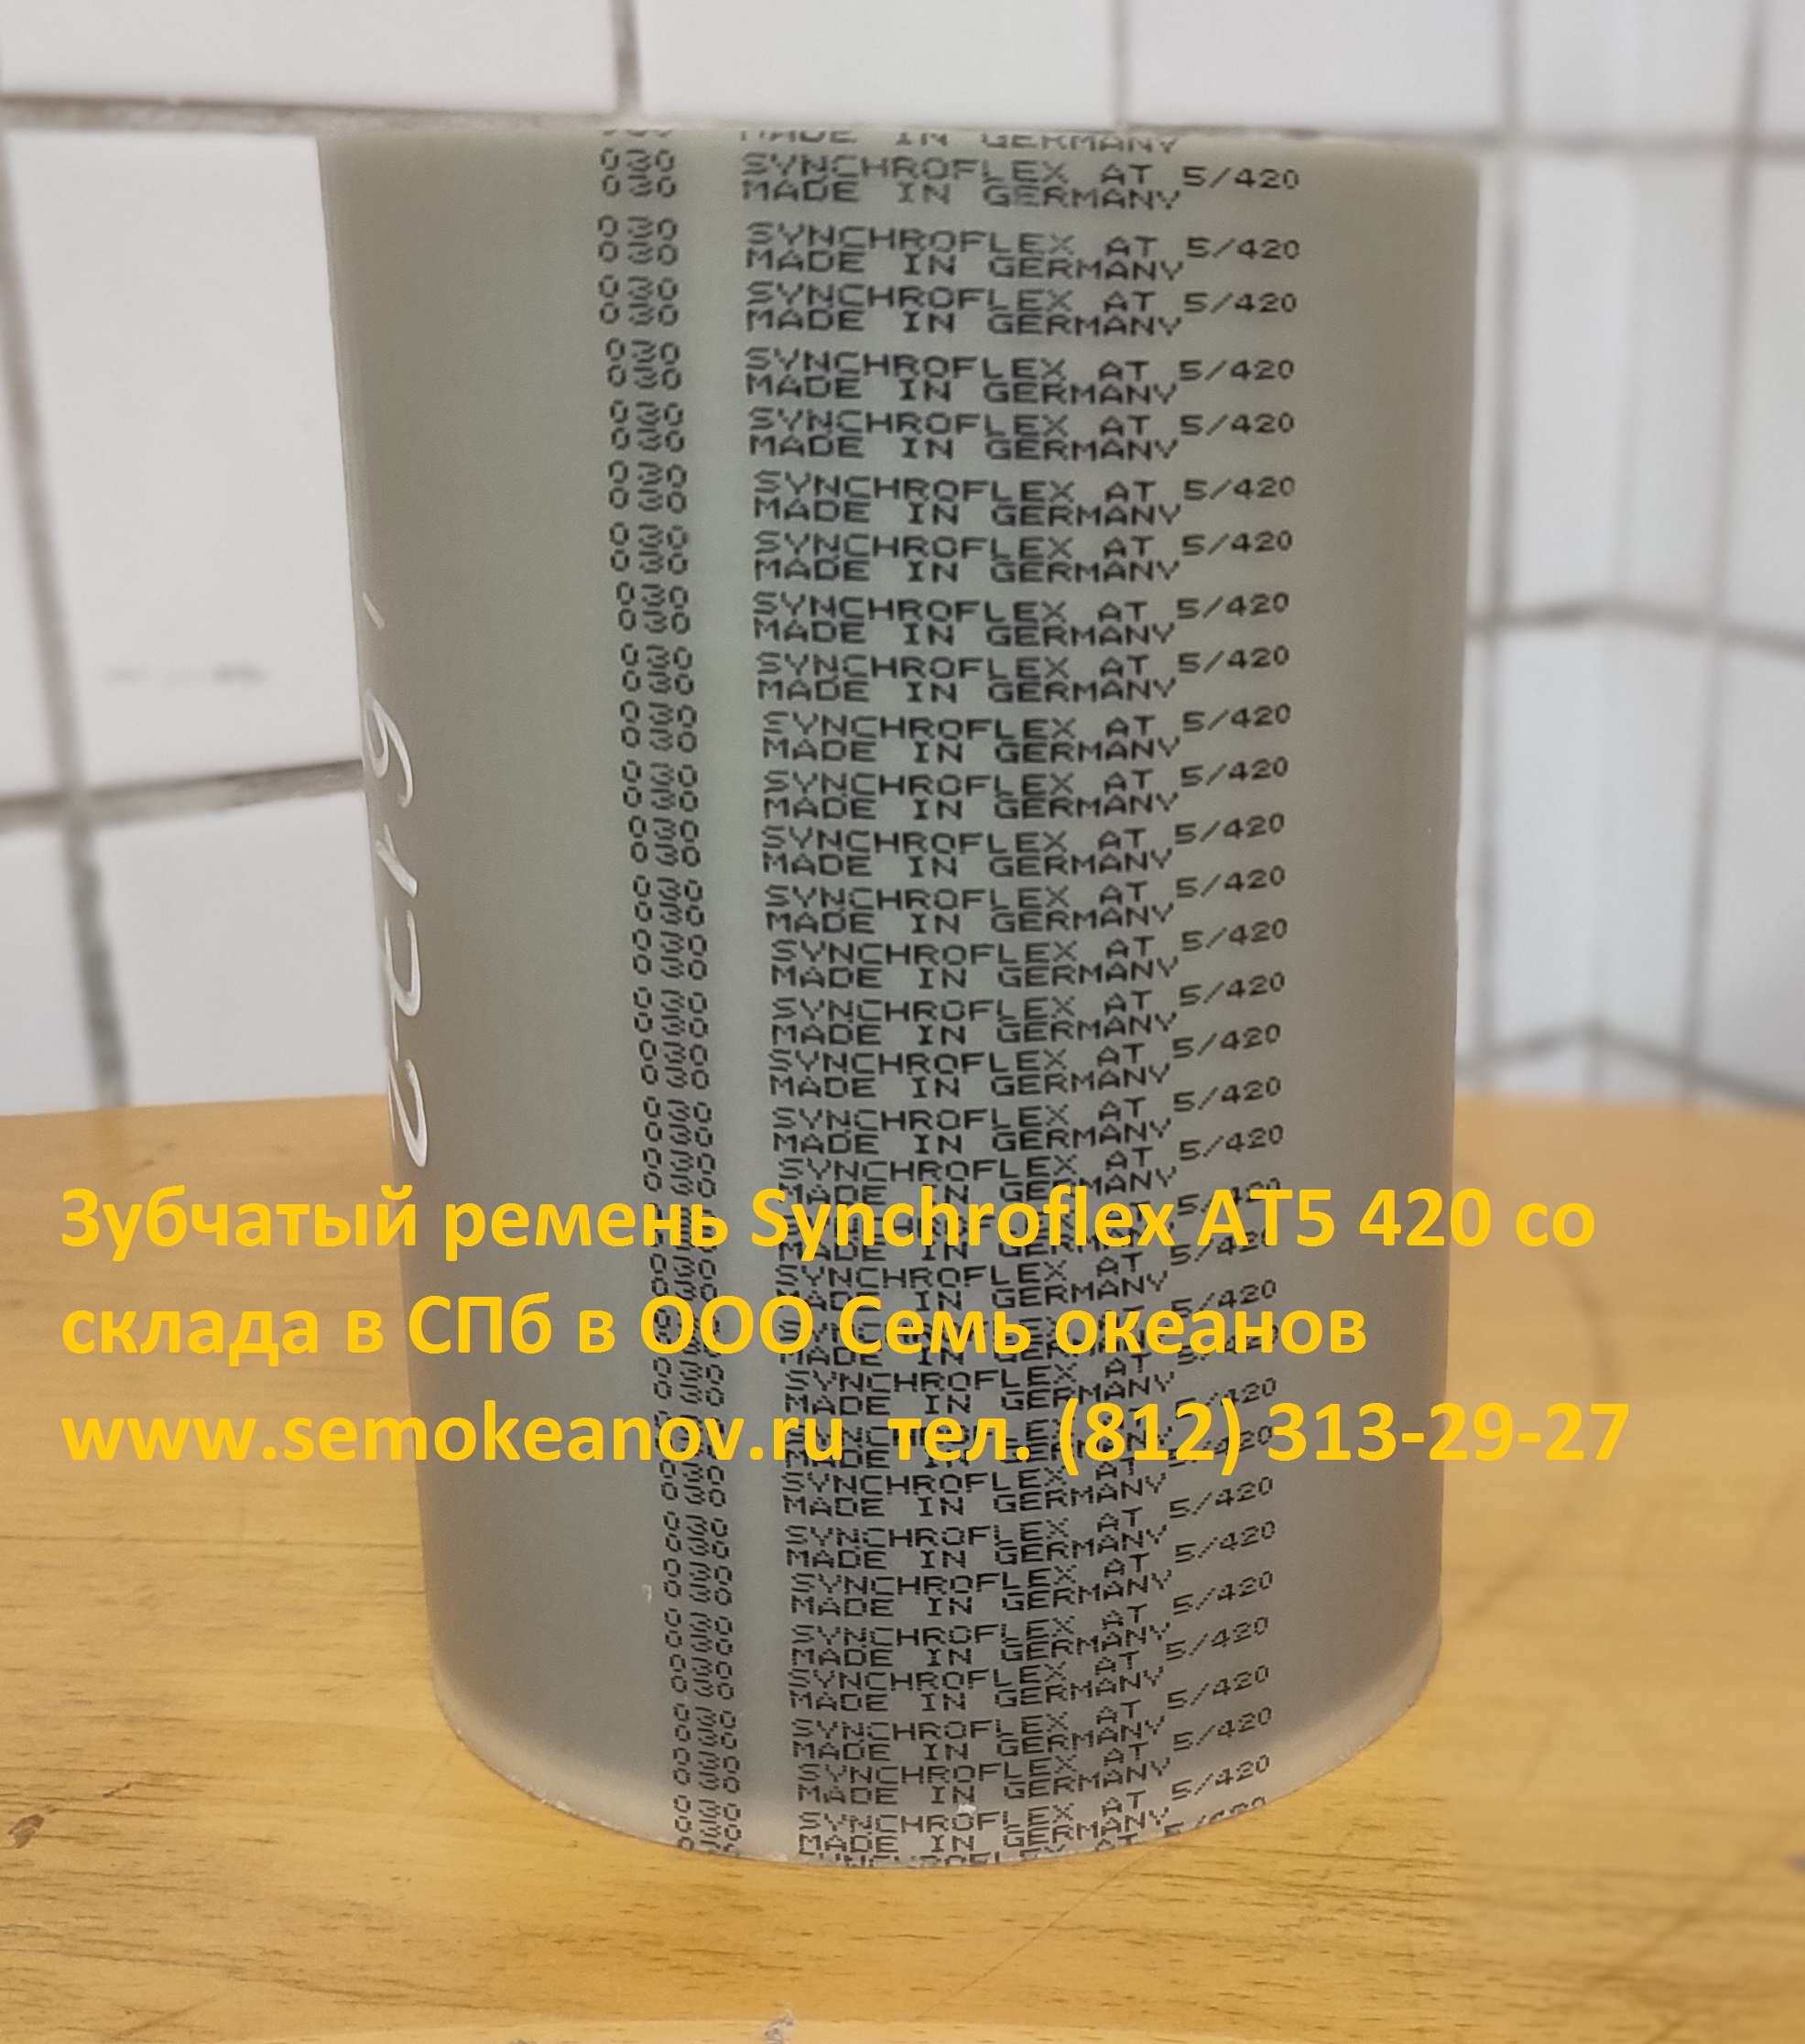 Зубчатый ремень Synchroflex AT5 420 со склада в СПб